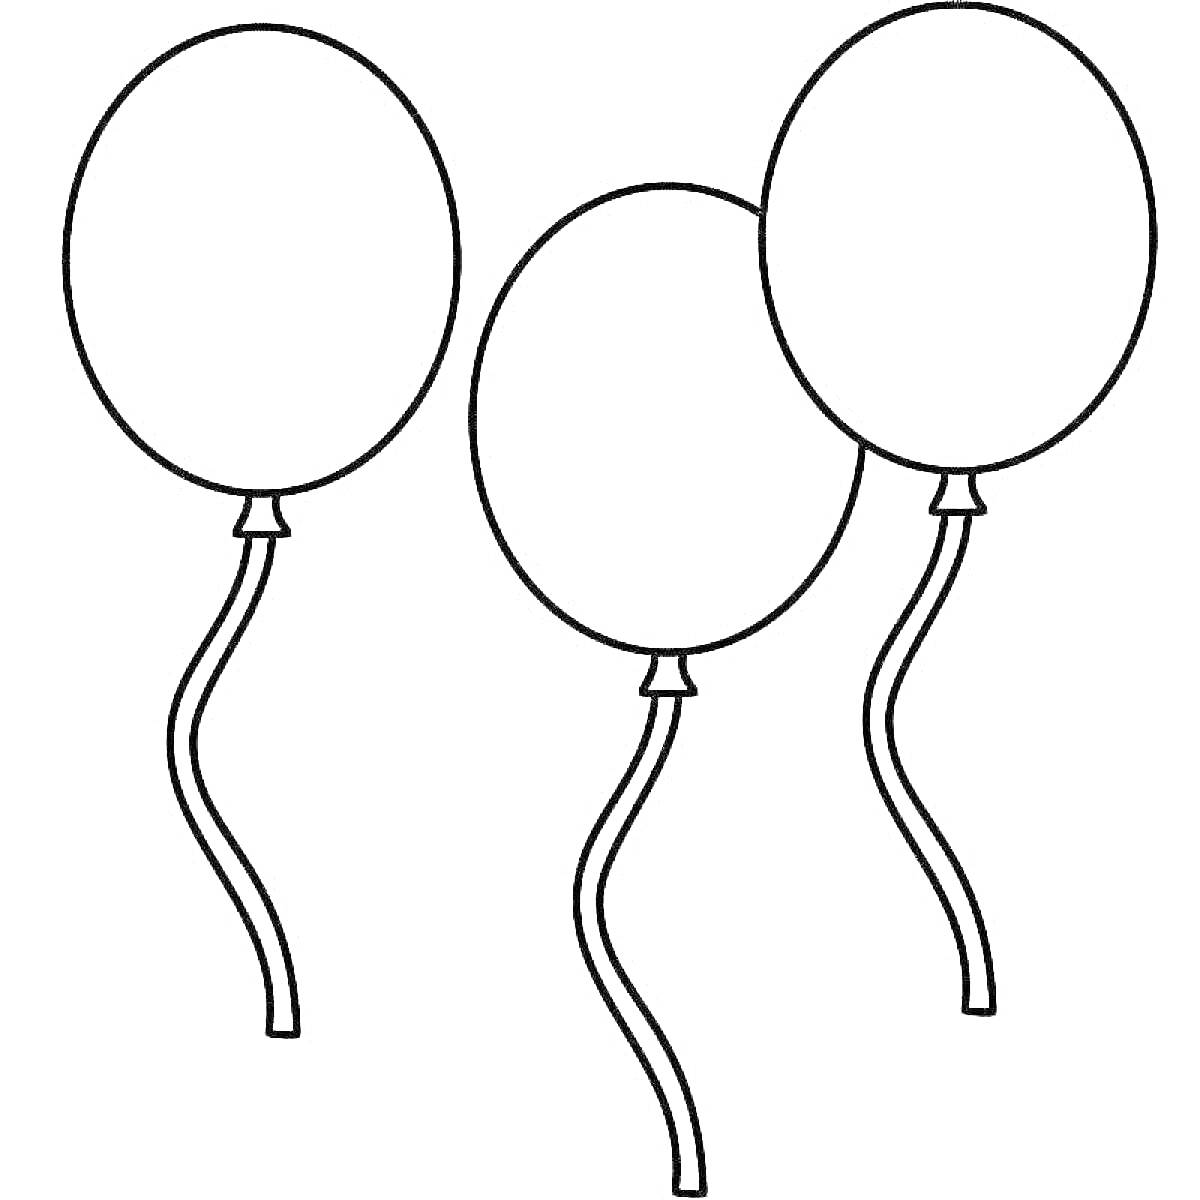 Три воздушных шарика с длинными ленточками